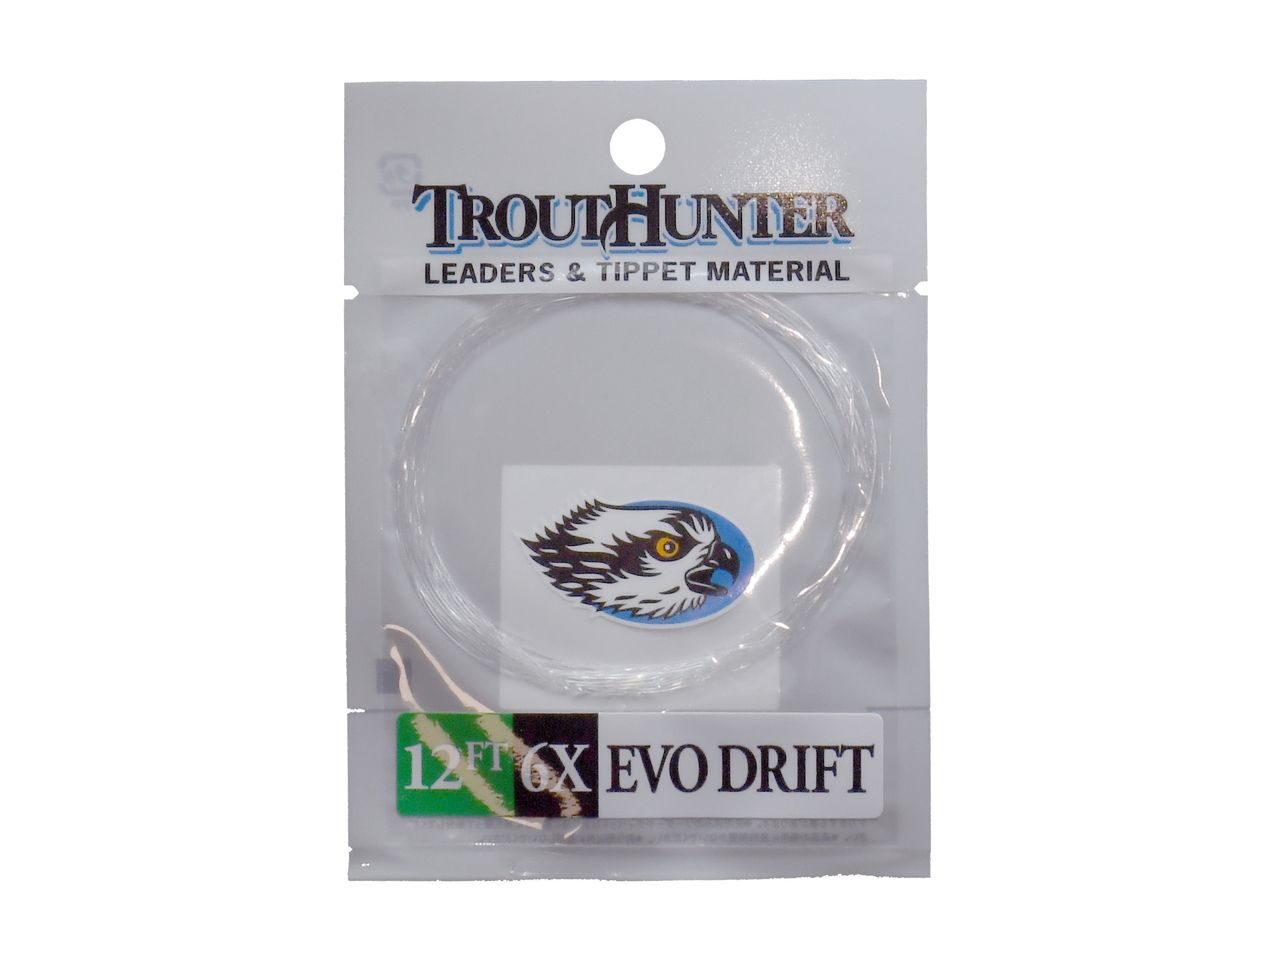 Trouthunter EVO Drift Leader 12ft